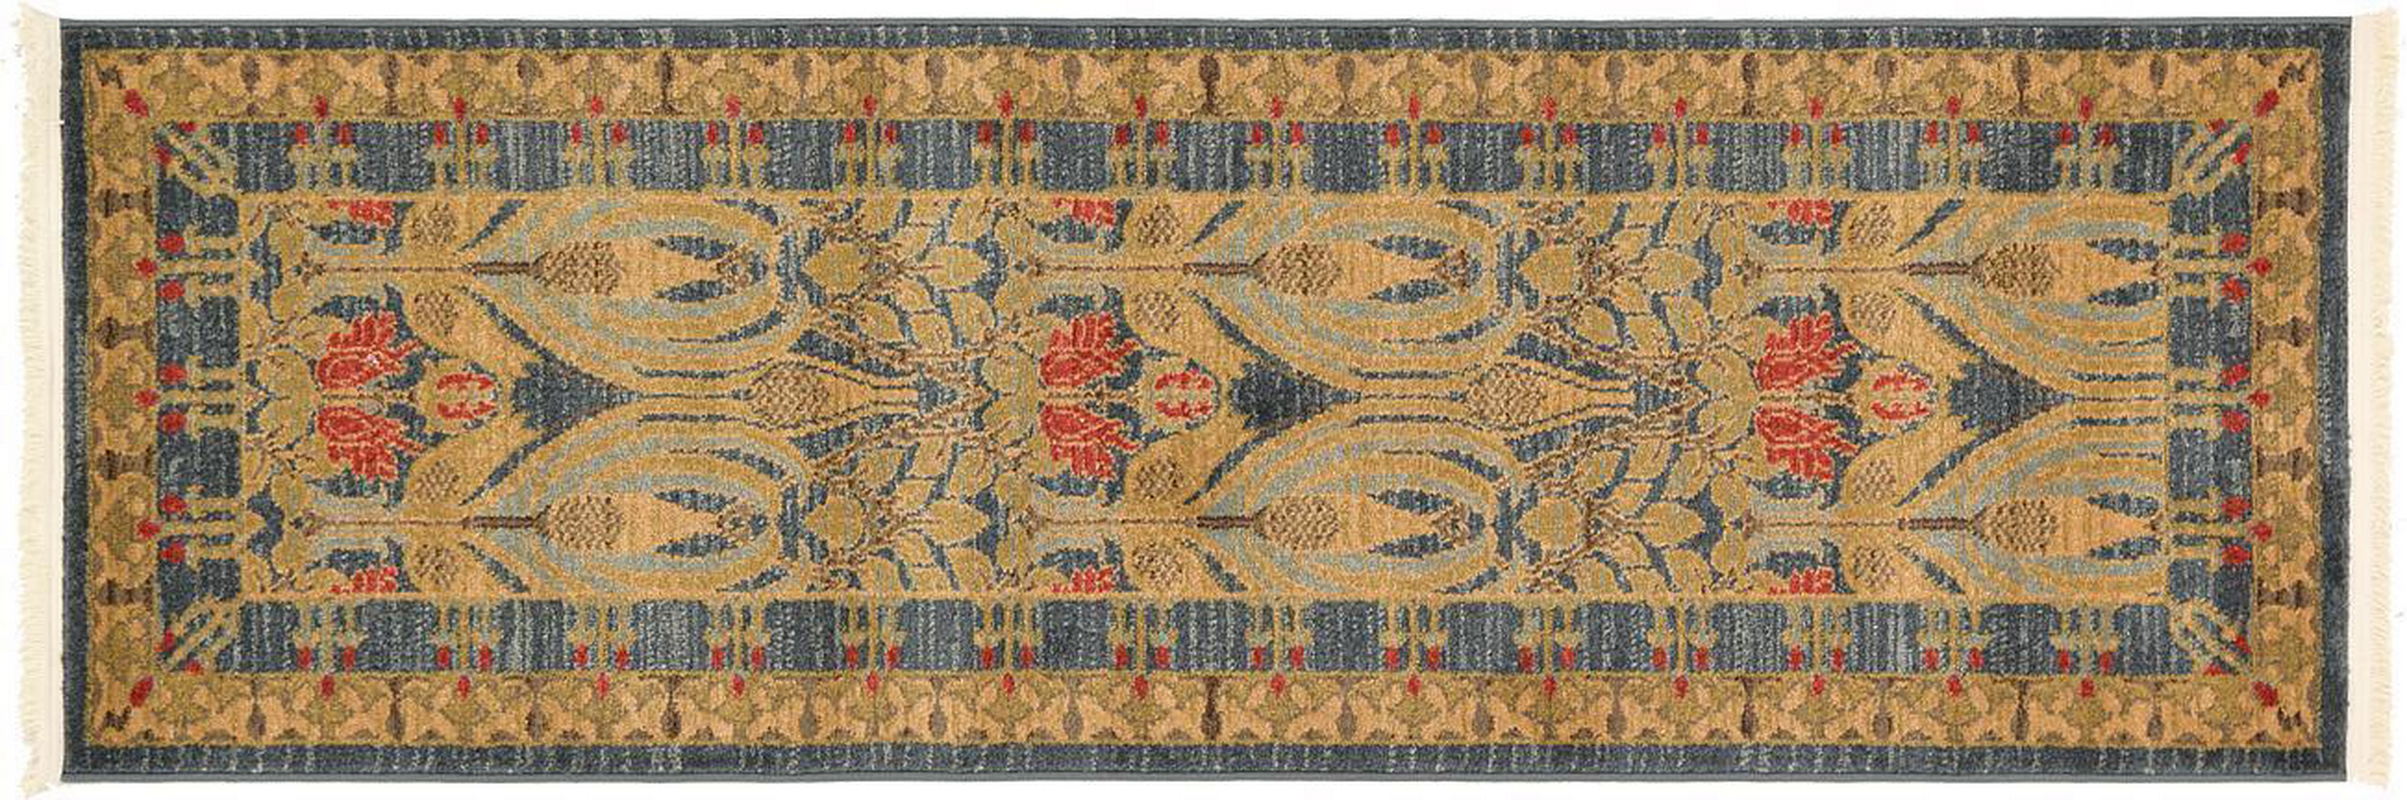 古典经典地毯ID10144